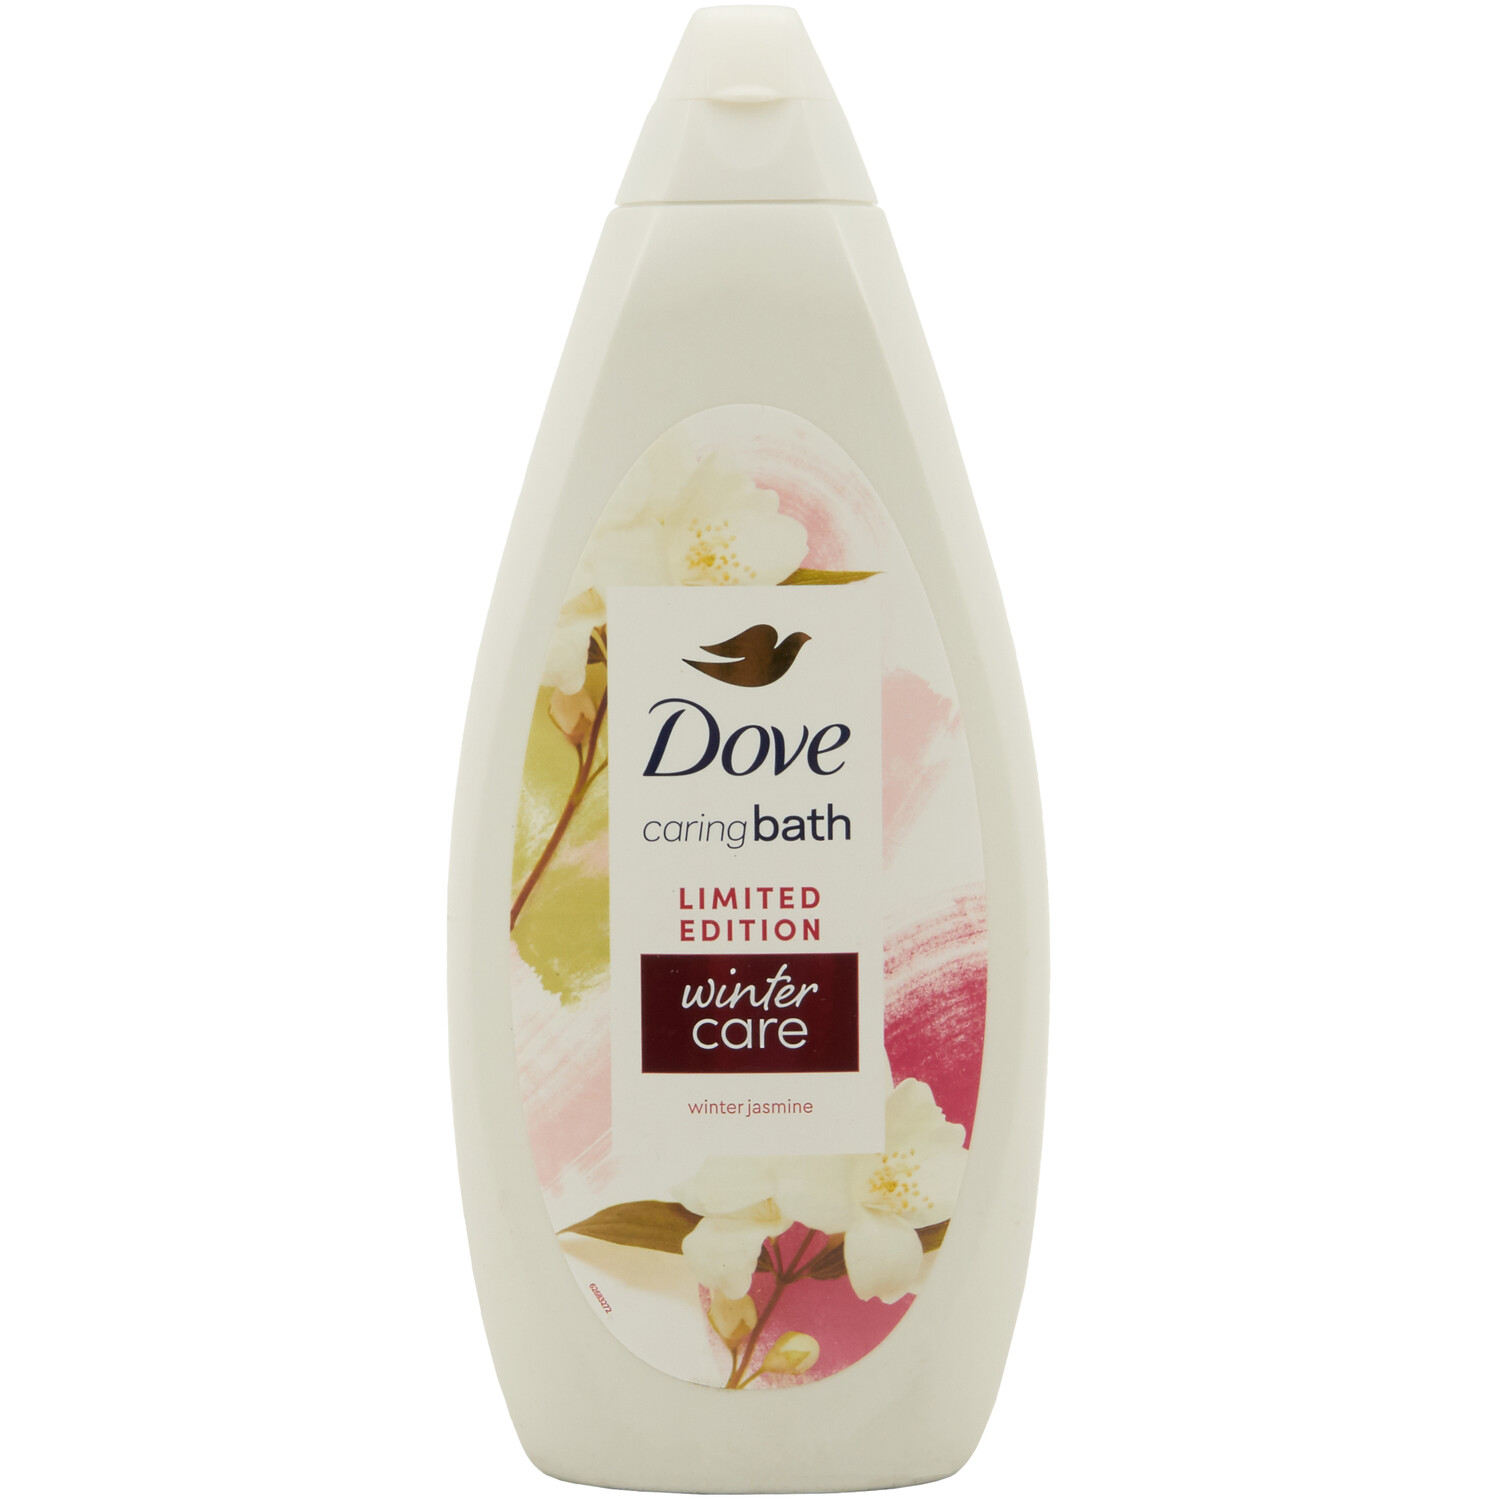 Dove Winter Care Bath Soak 720ml - White Image 1